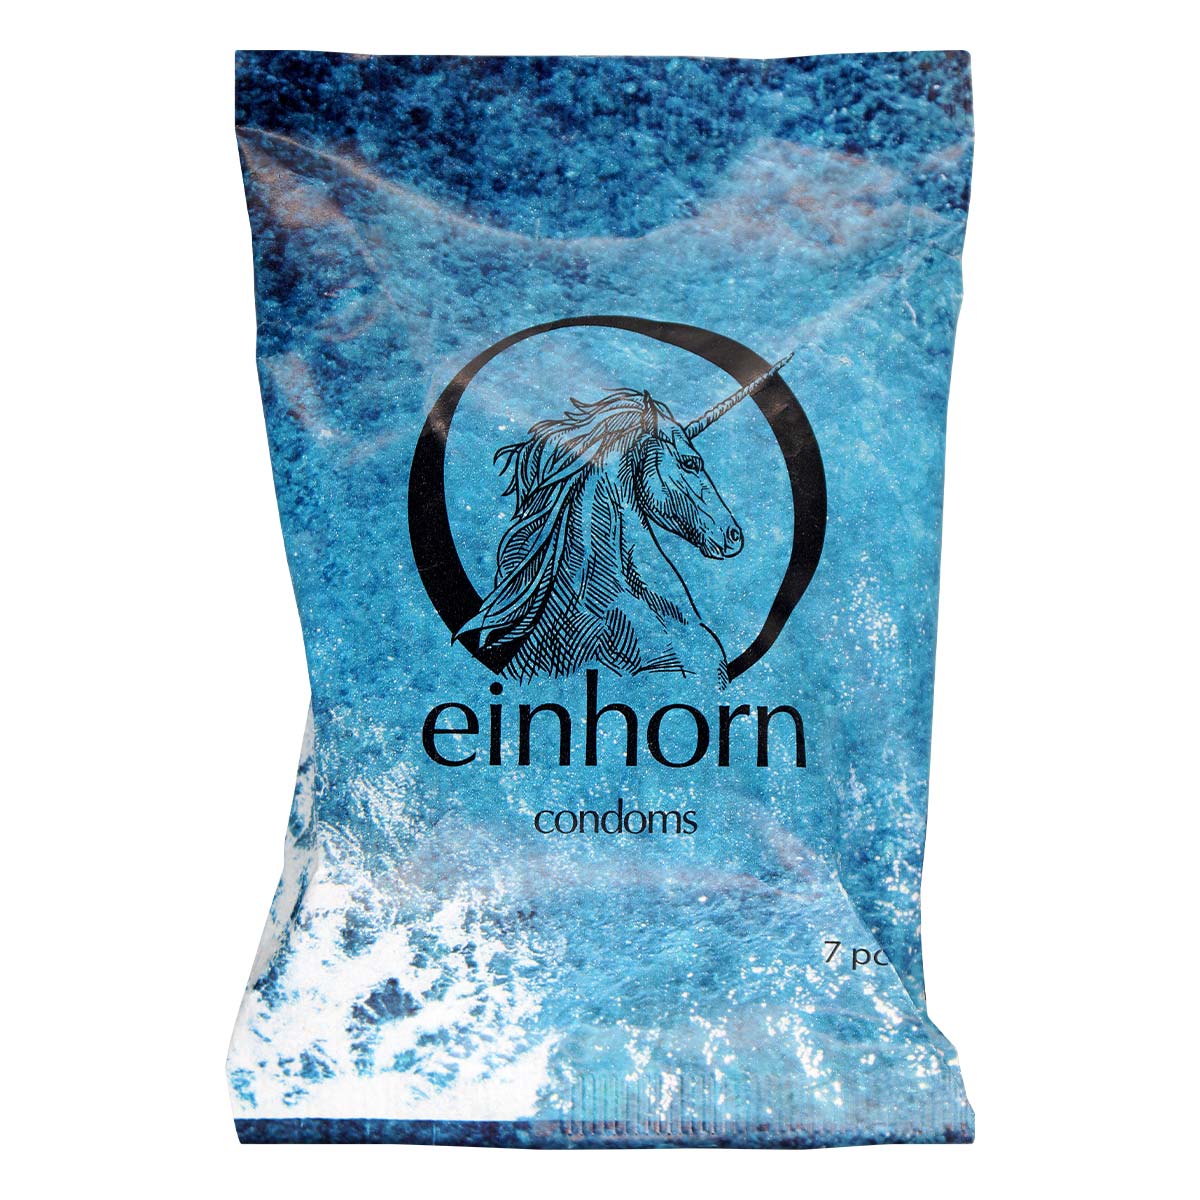 Einhorn Bali Vegan Condom 7's Pack Latex Condom-p_2